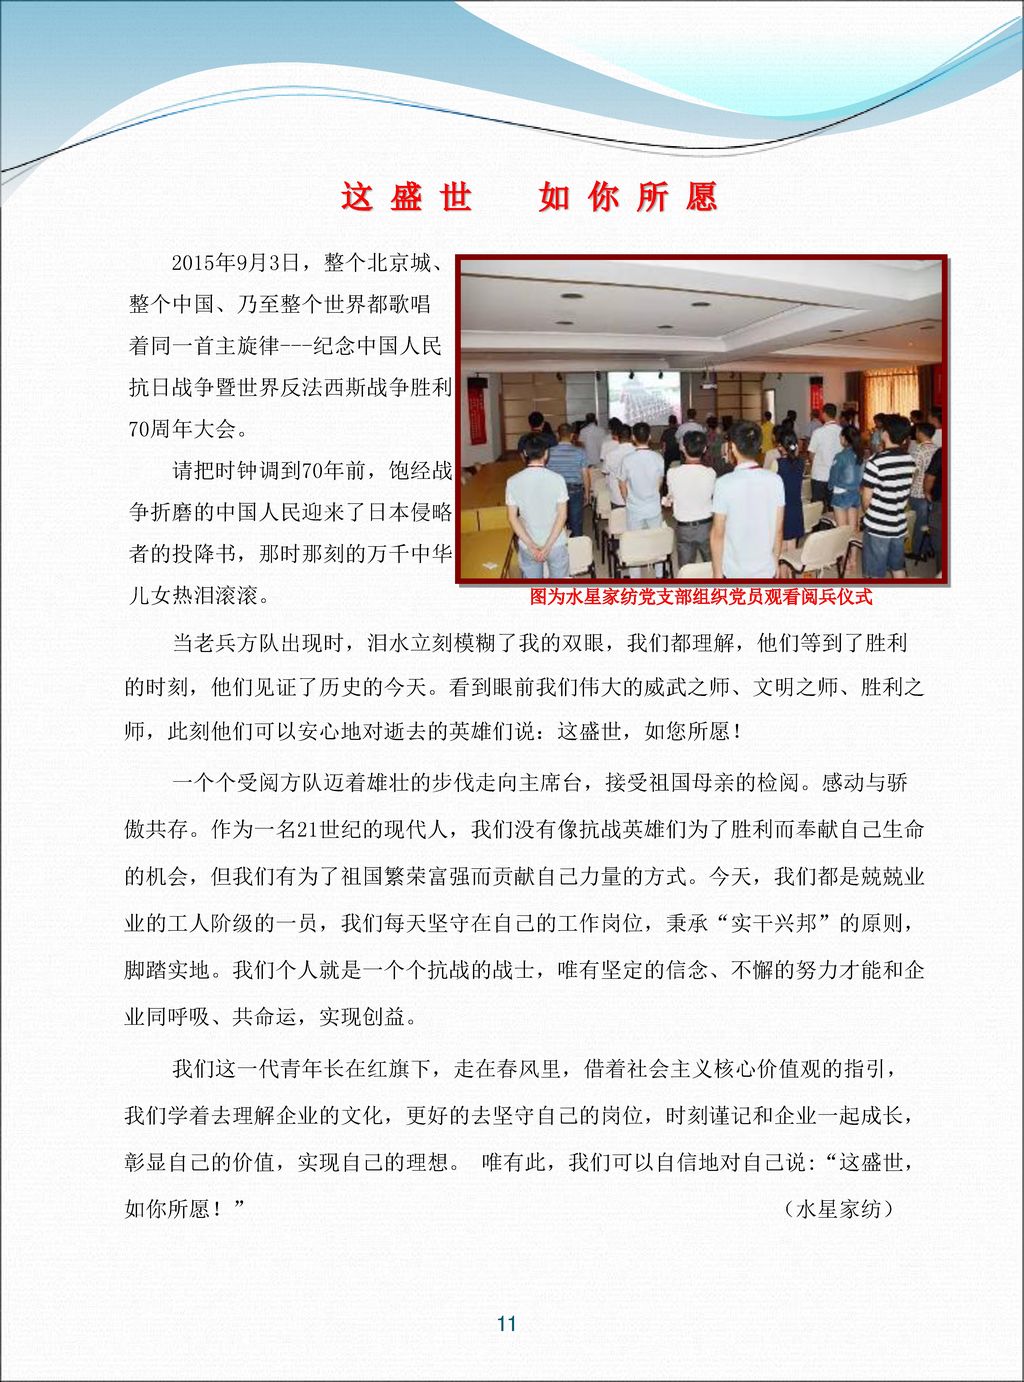 这 盛 世 如 你 所 愿 2015年9月3日，整个北京城、 整个中国、乃至整个世界都歌唱 着同一首主旋律---纪念中国人民